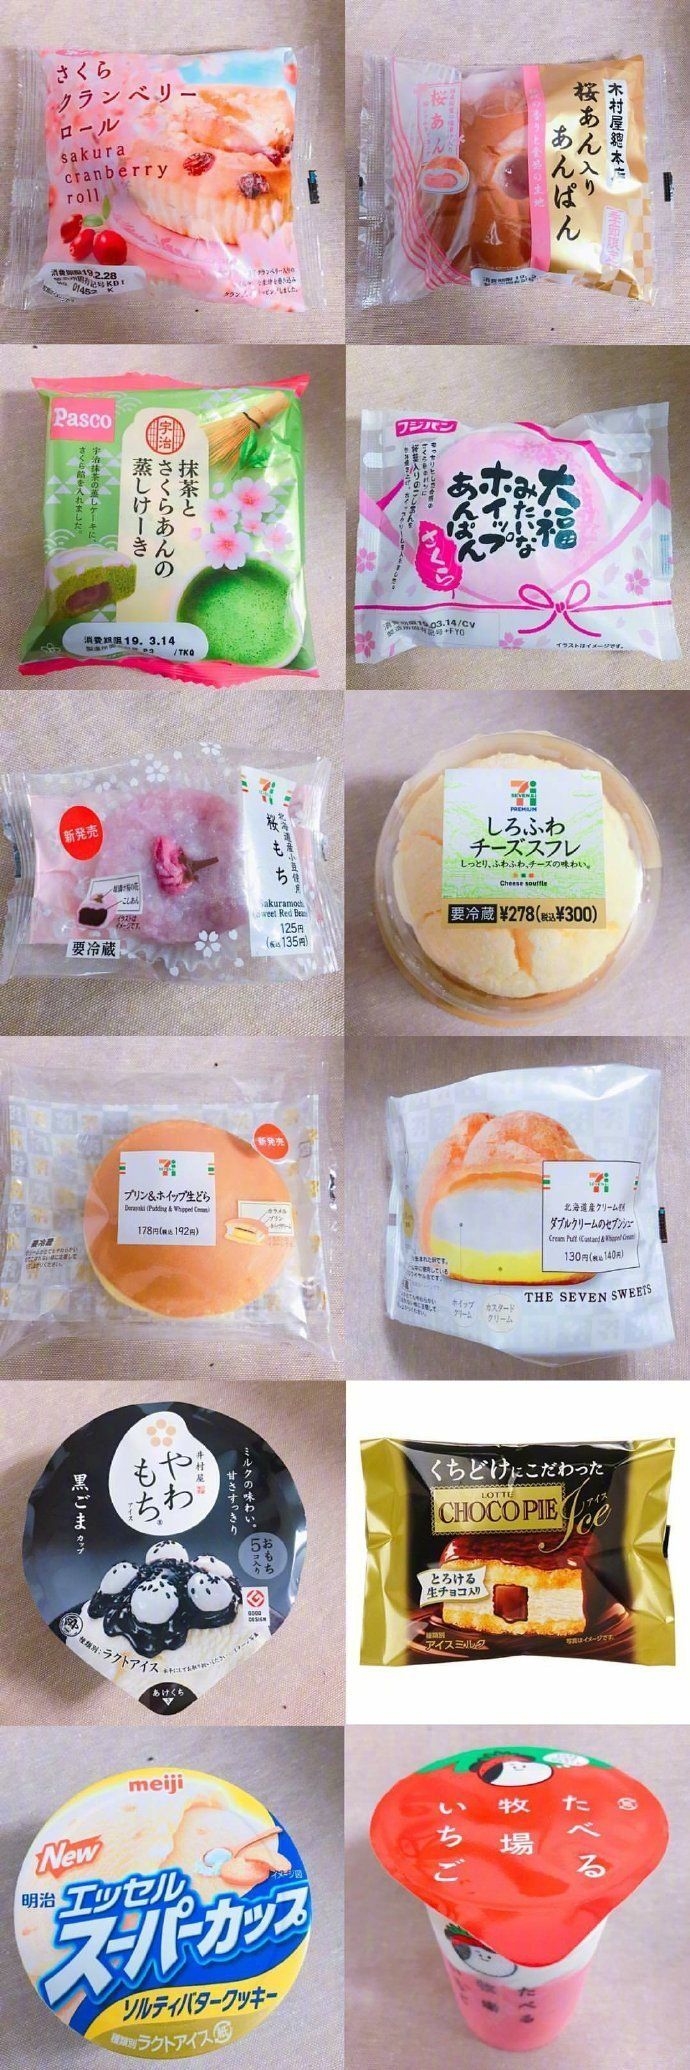 高颜值美味的日本进口甜品蛋糕美食图片大合集